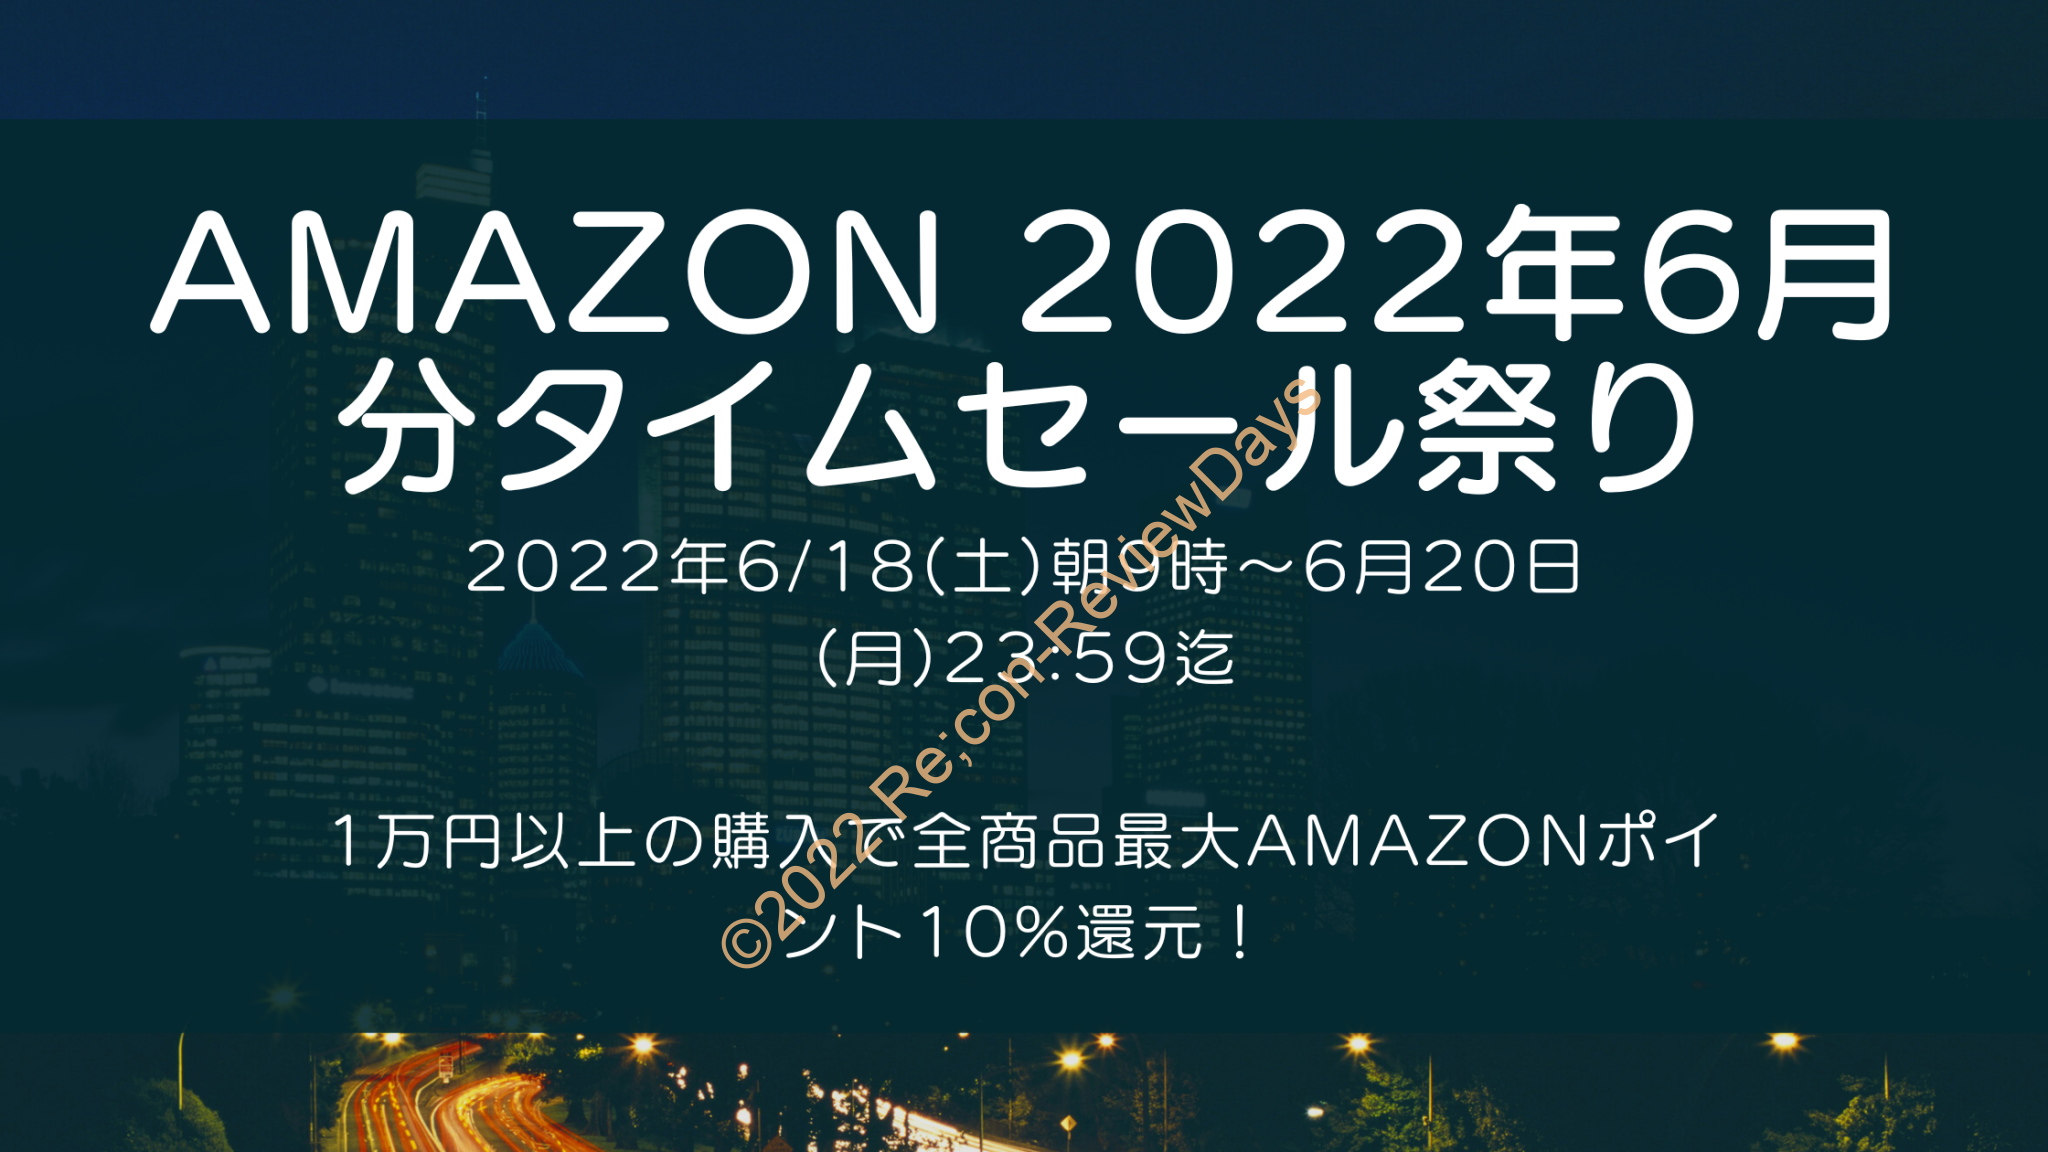 Amazonにて2022年6月実施分の「63時間のビッグセール タイムセール祭り」を6月18日(土)朝9時から約3日間開催 #Amazon #アマゾン #セール #特価 #タイムセール #タイムセール祭り